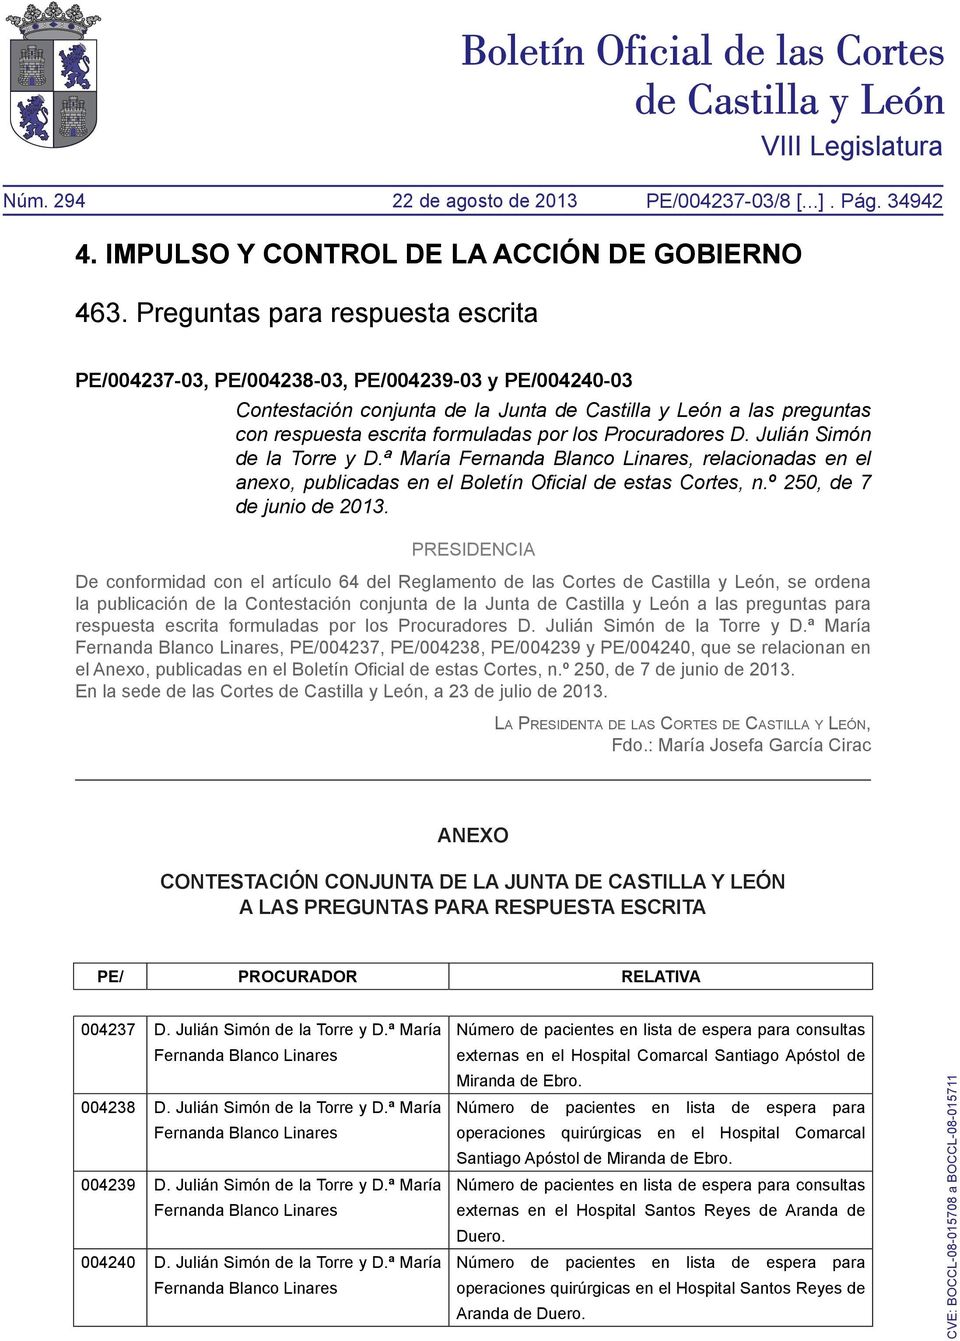 Procuradores D. Julián Simón de la Torre y D.ª María Fernanda Blanco Linares, relacionadas en el anexo, publicadas en el Boletín Oficial de estas Cortes, n.º 250, de 7 de junio de 2013.